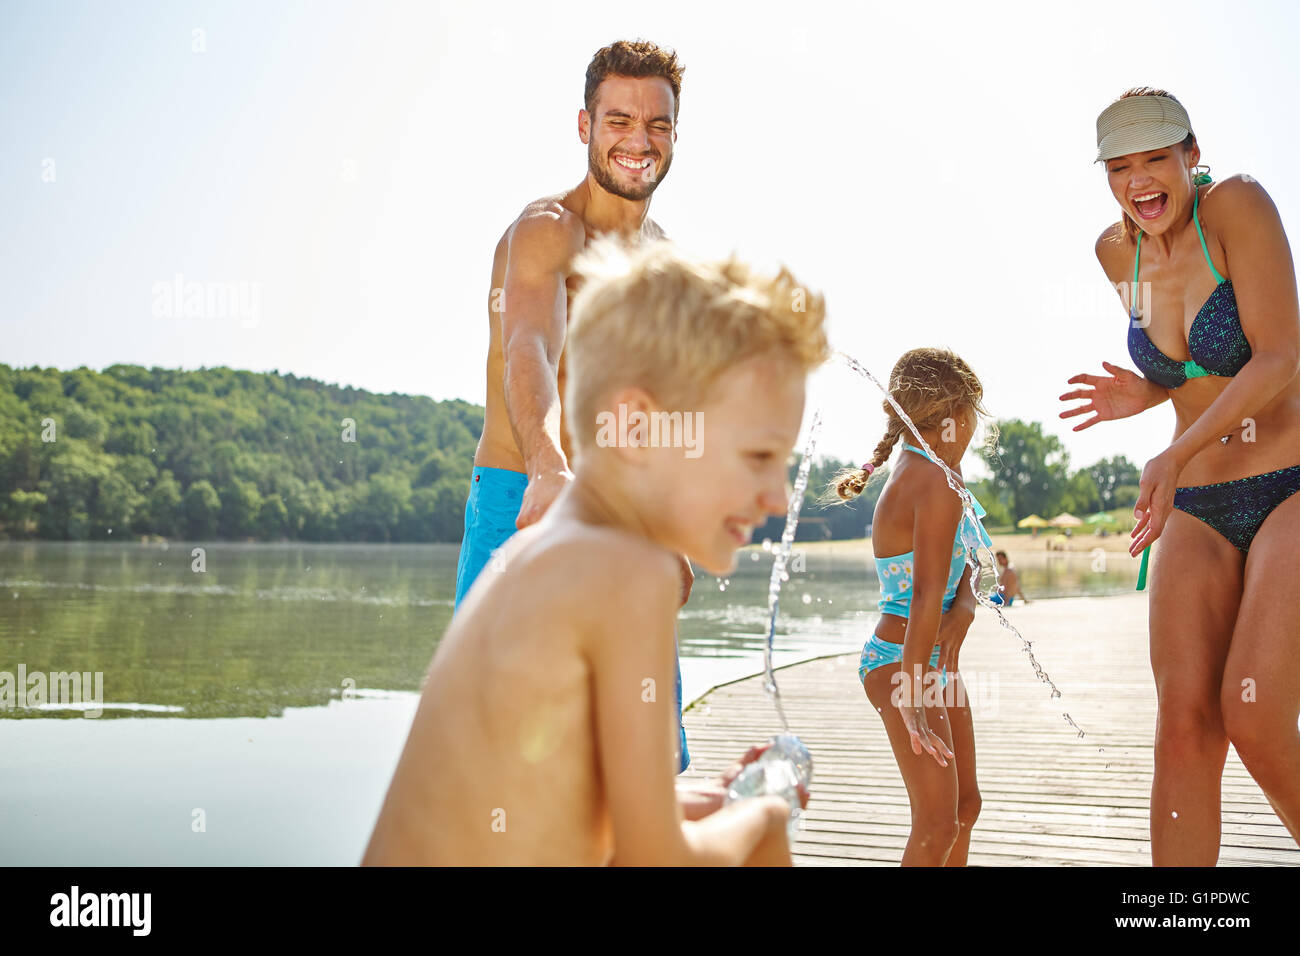 Familie Spray einander an einem See Wasser und Spaß haben Stockfoto